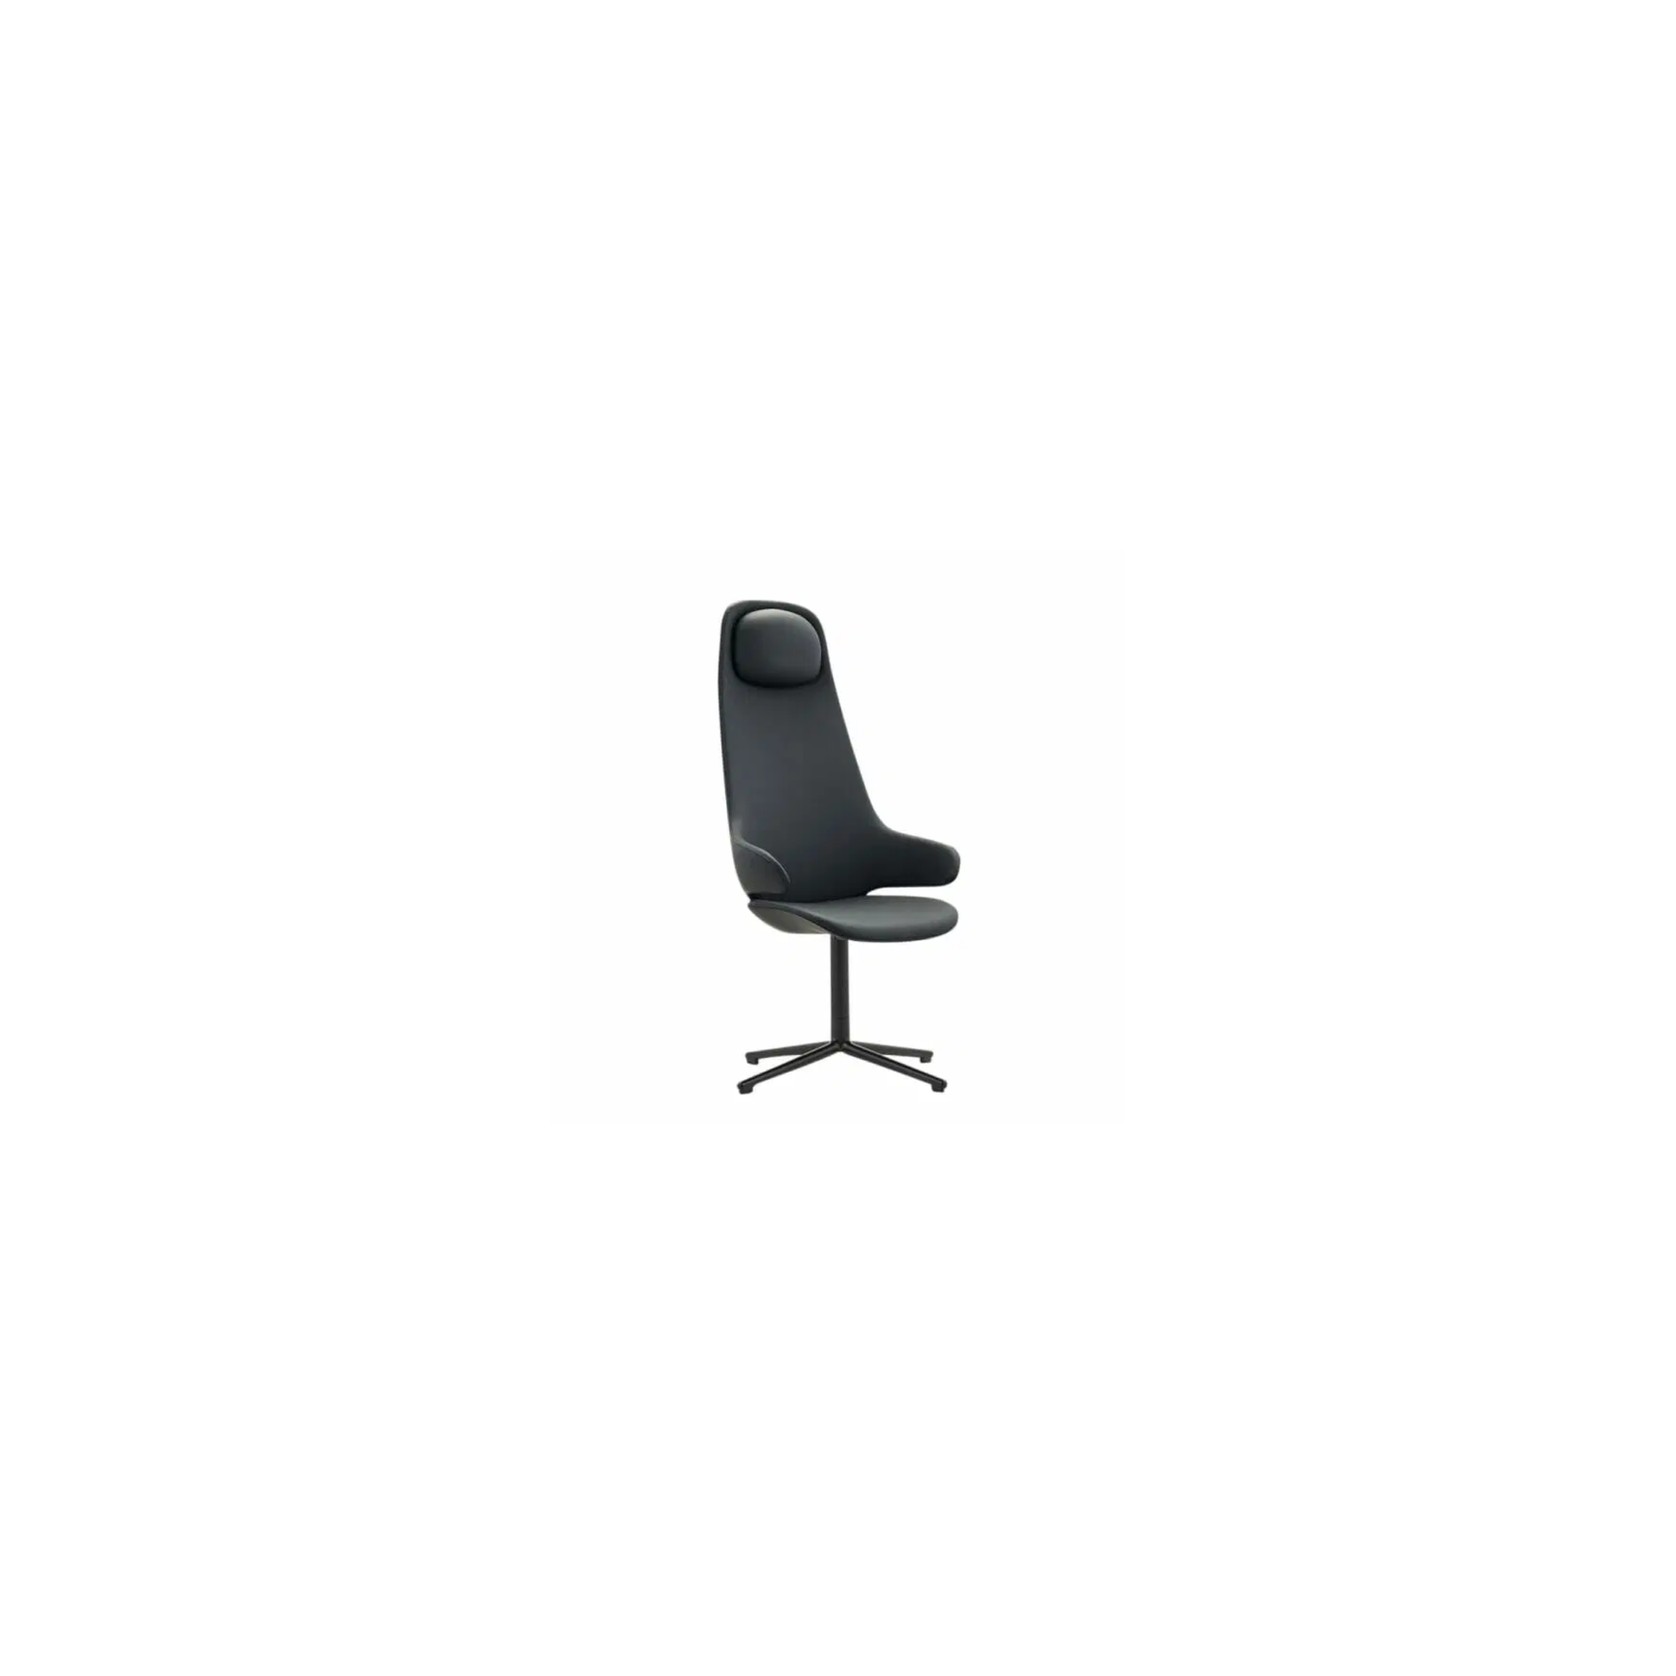 Orbit Chair gallery detail image